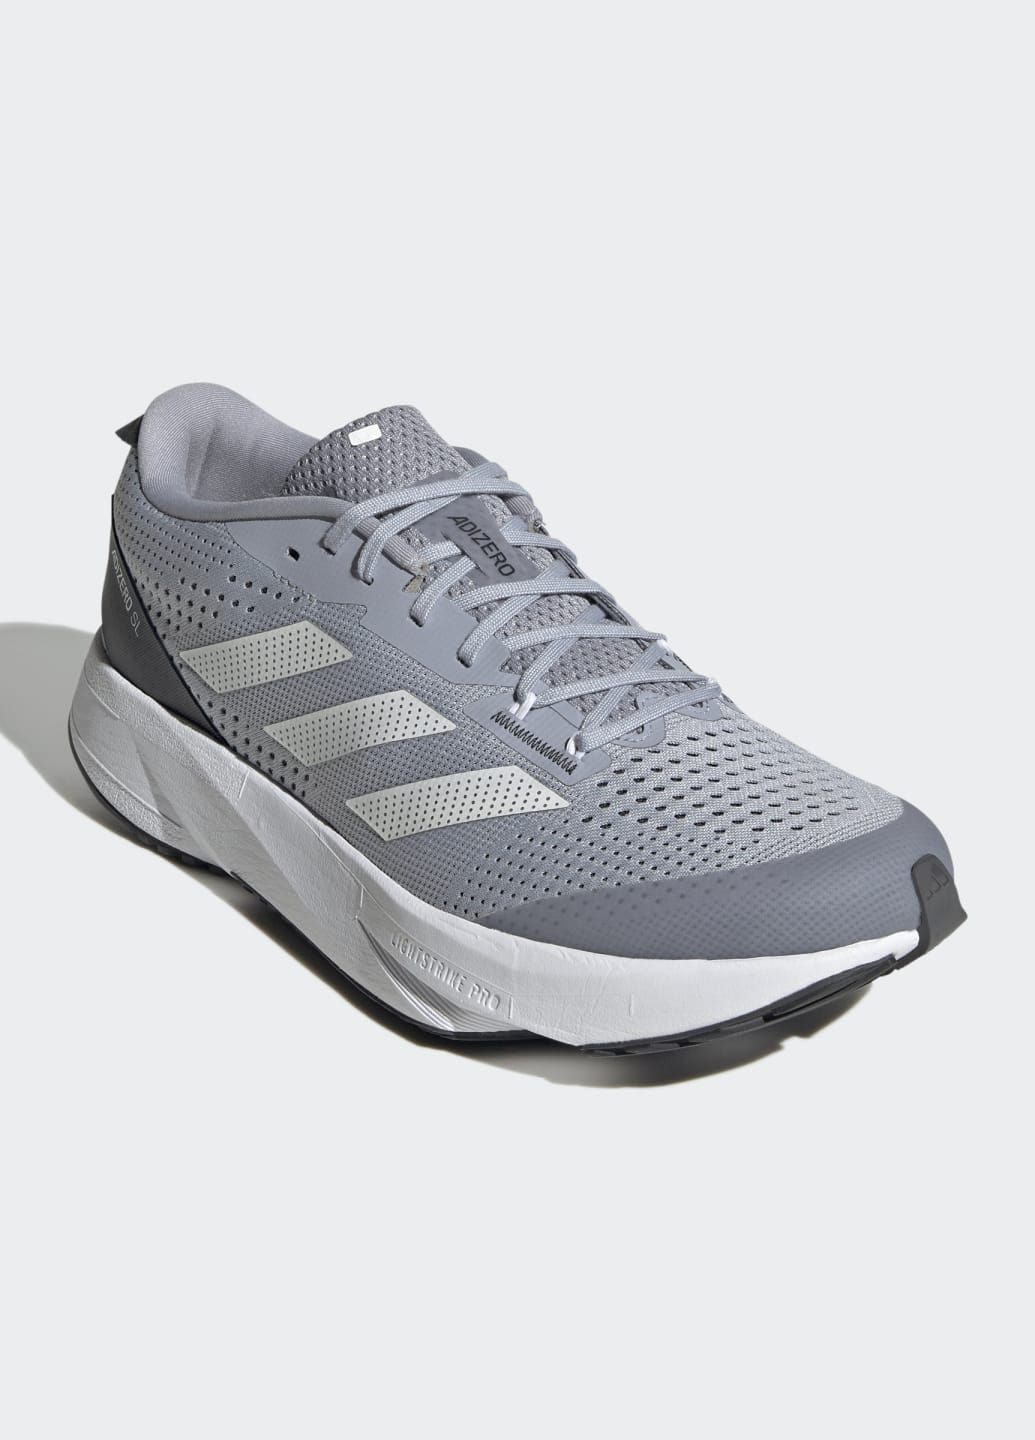 Сірі всесезон кросівки для бігу adizero sl adidas